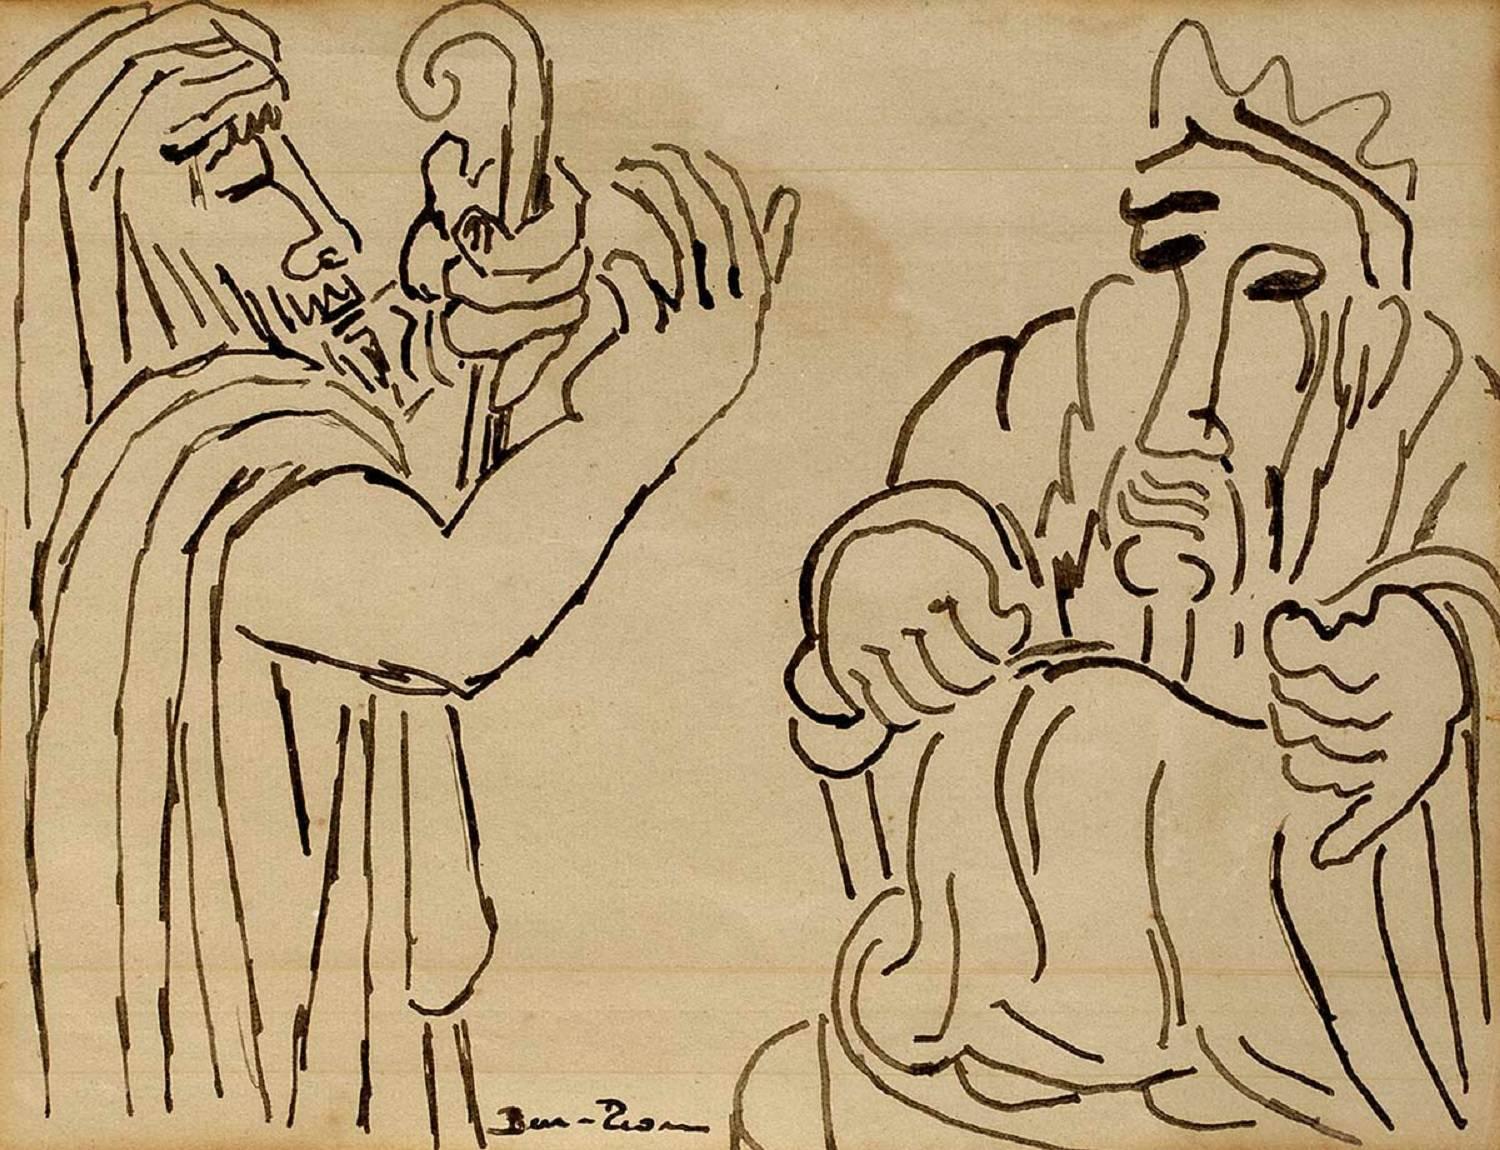 Biblical Scene, (2 Jewish Men) 1930s Modernist Ink Drawing - Art by Ben-Zion Weinman